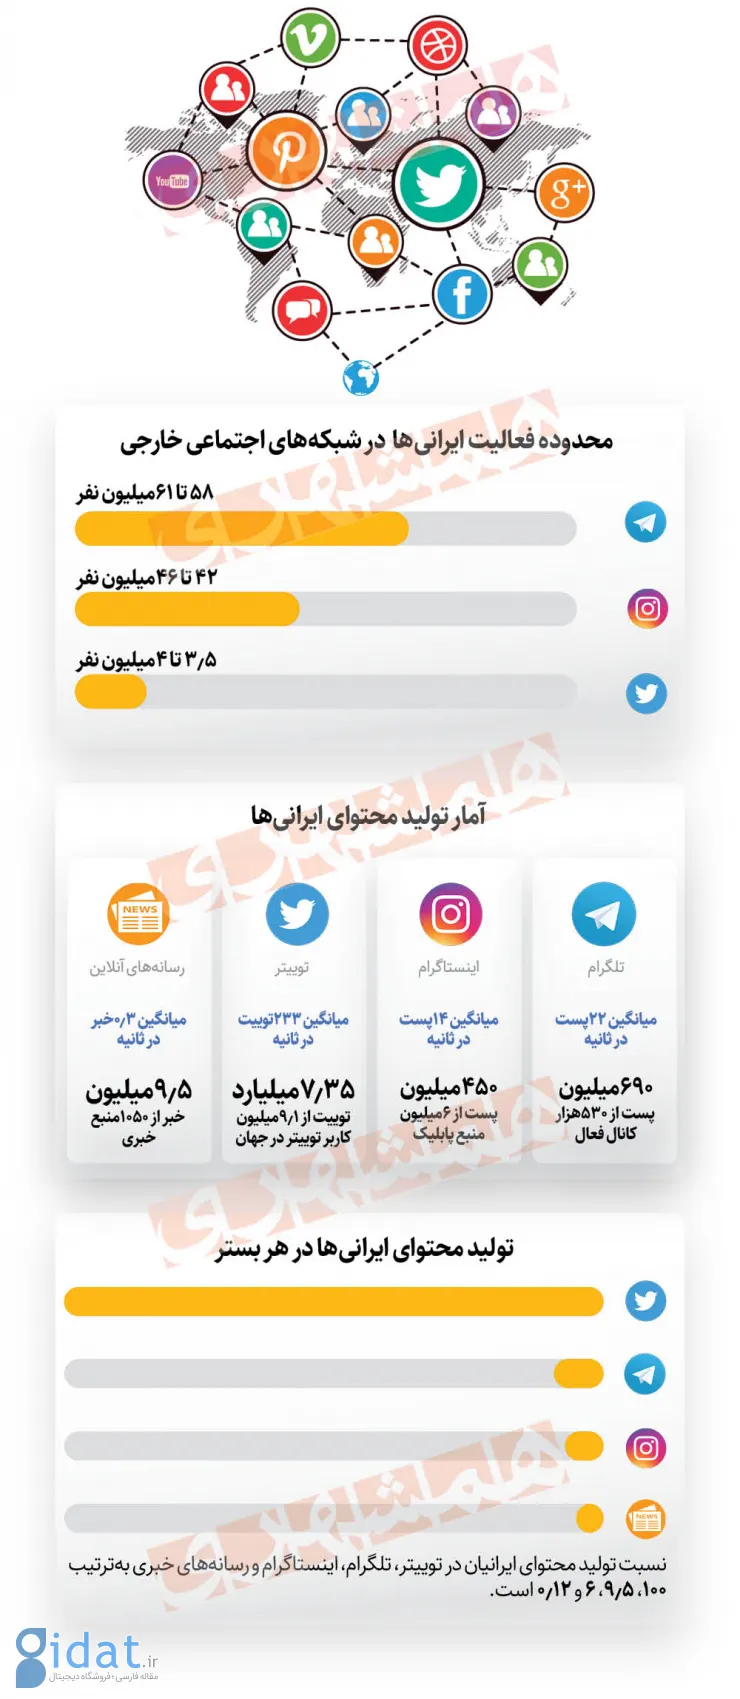 ایرانی ها در تلگرام رکورد زدند